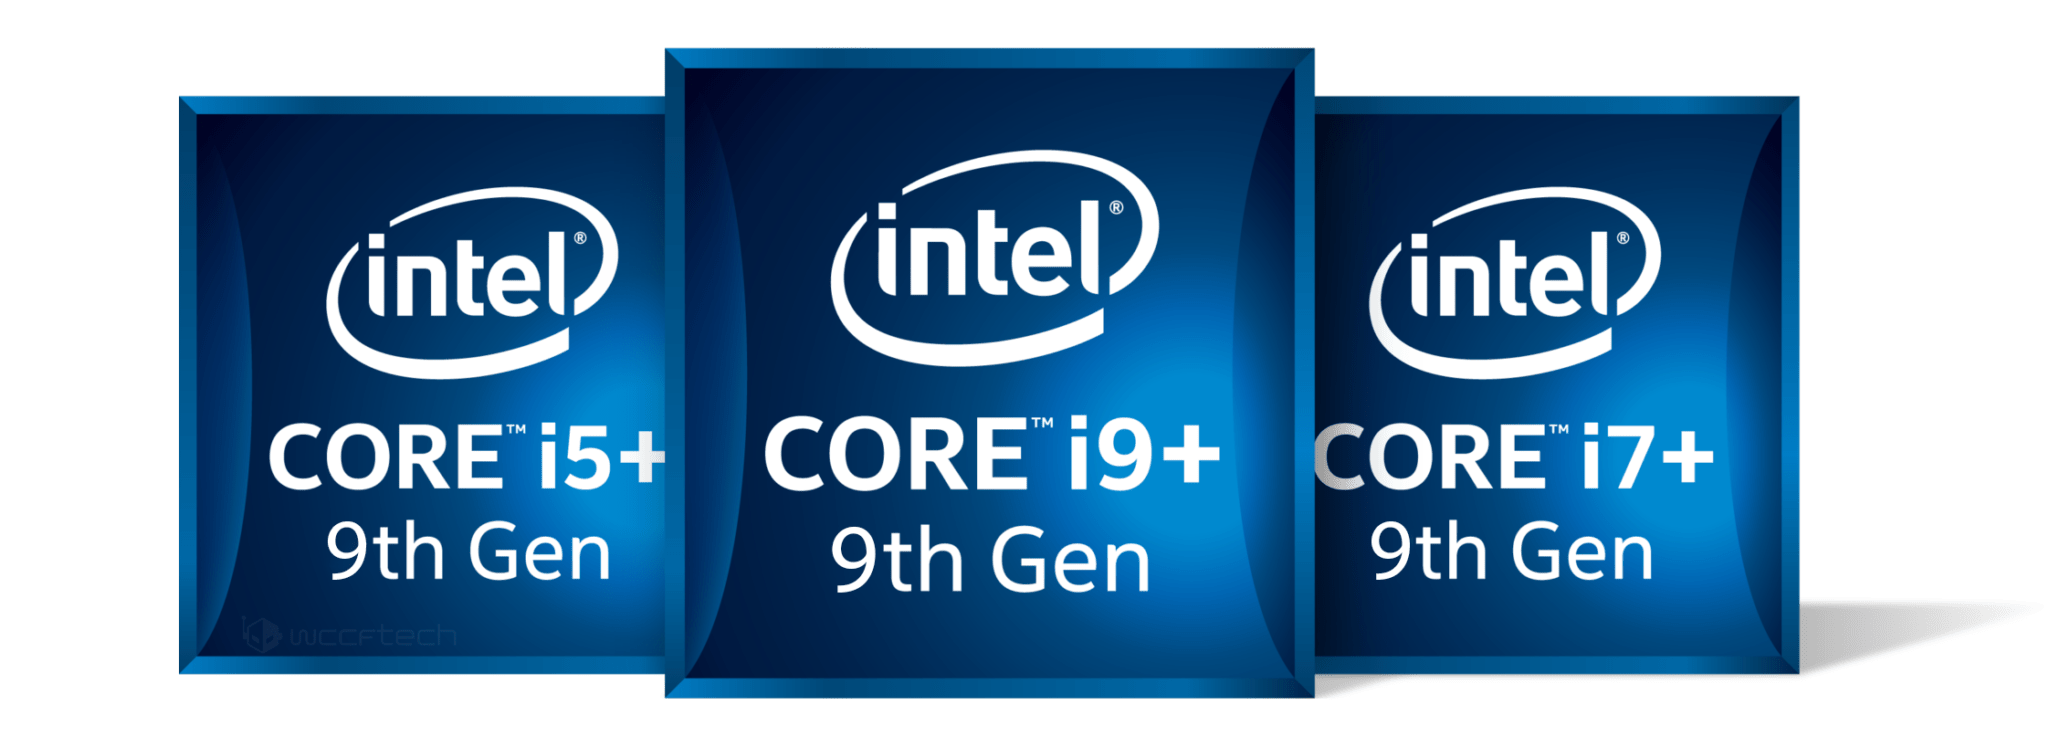 8th Gen Intel Core Platform Extension Badges 2060x713